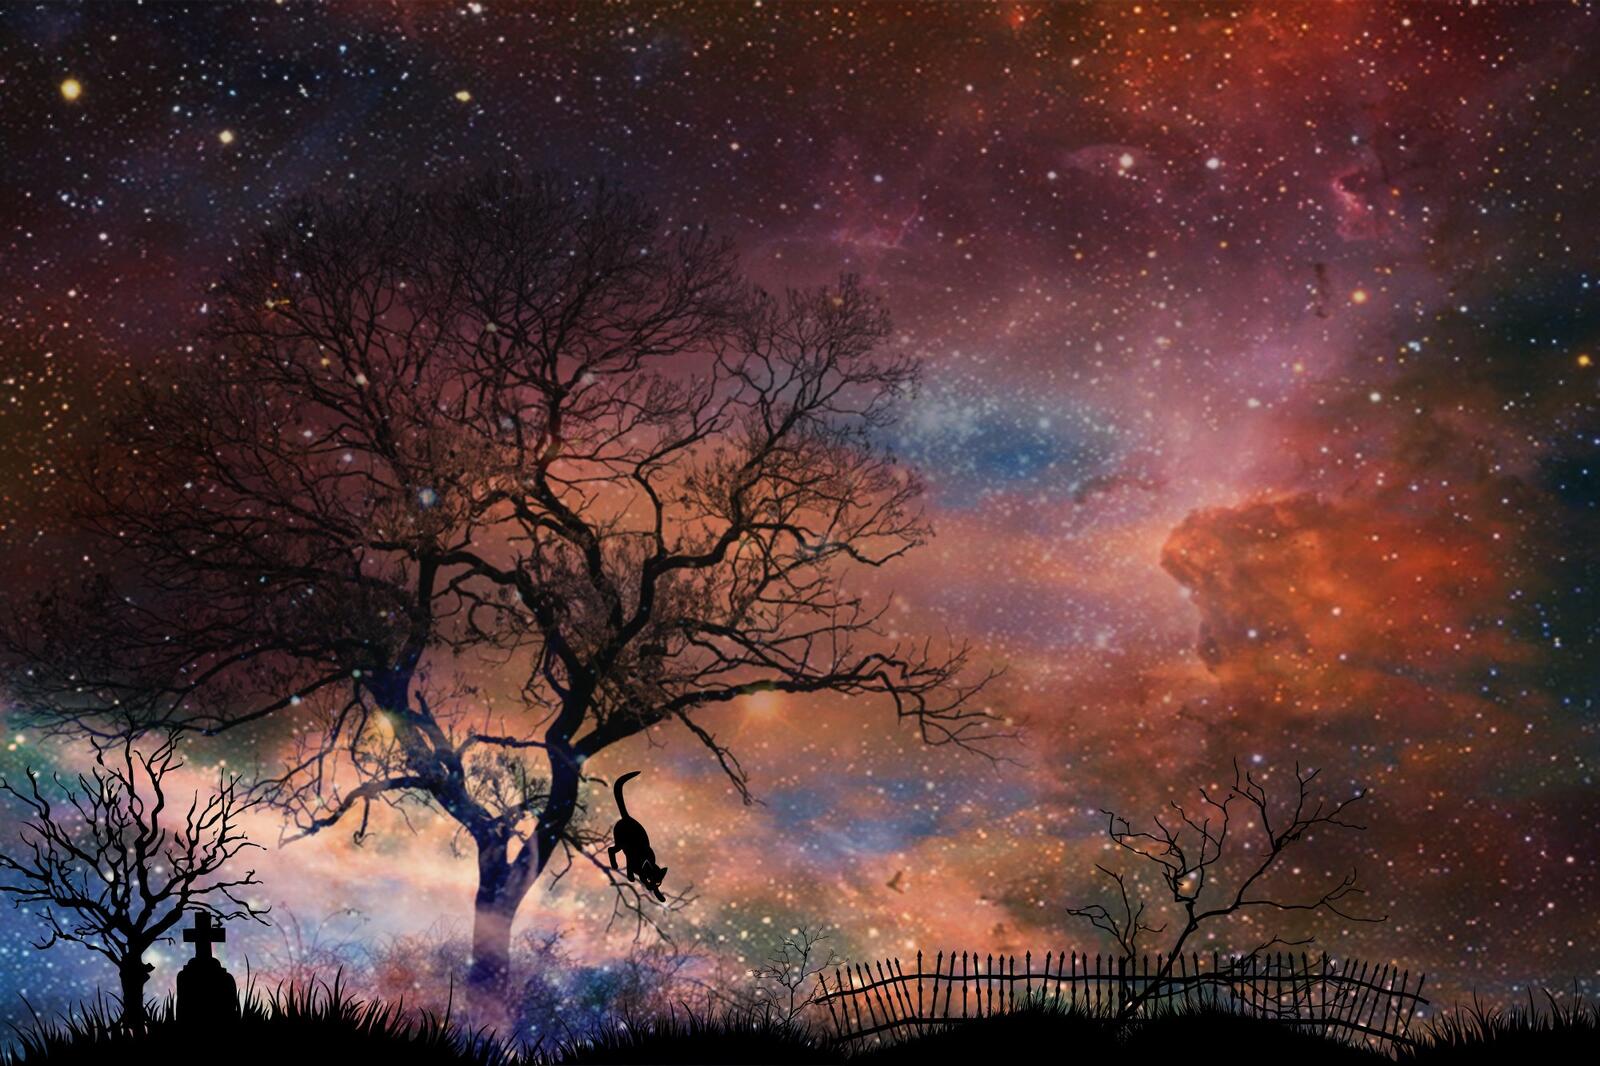 Бесплатное фото Фантастическое кладбище на фоне космической туманности